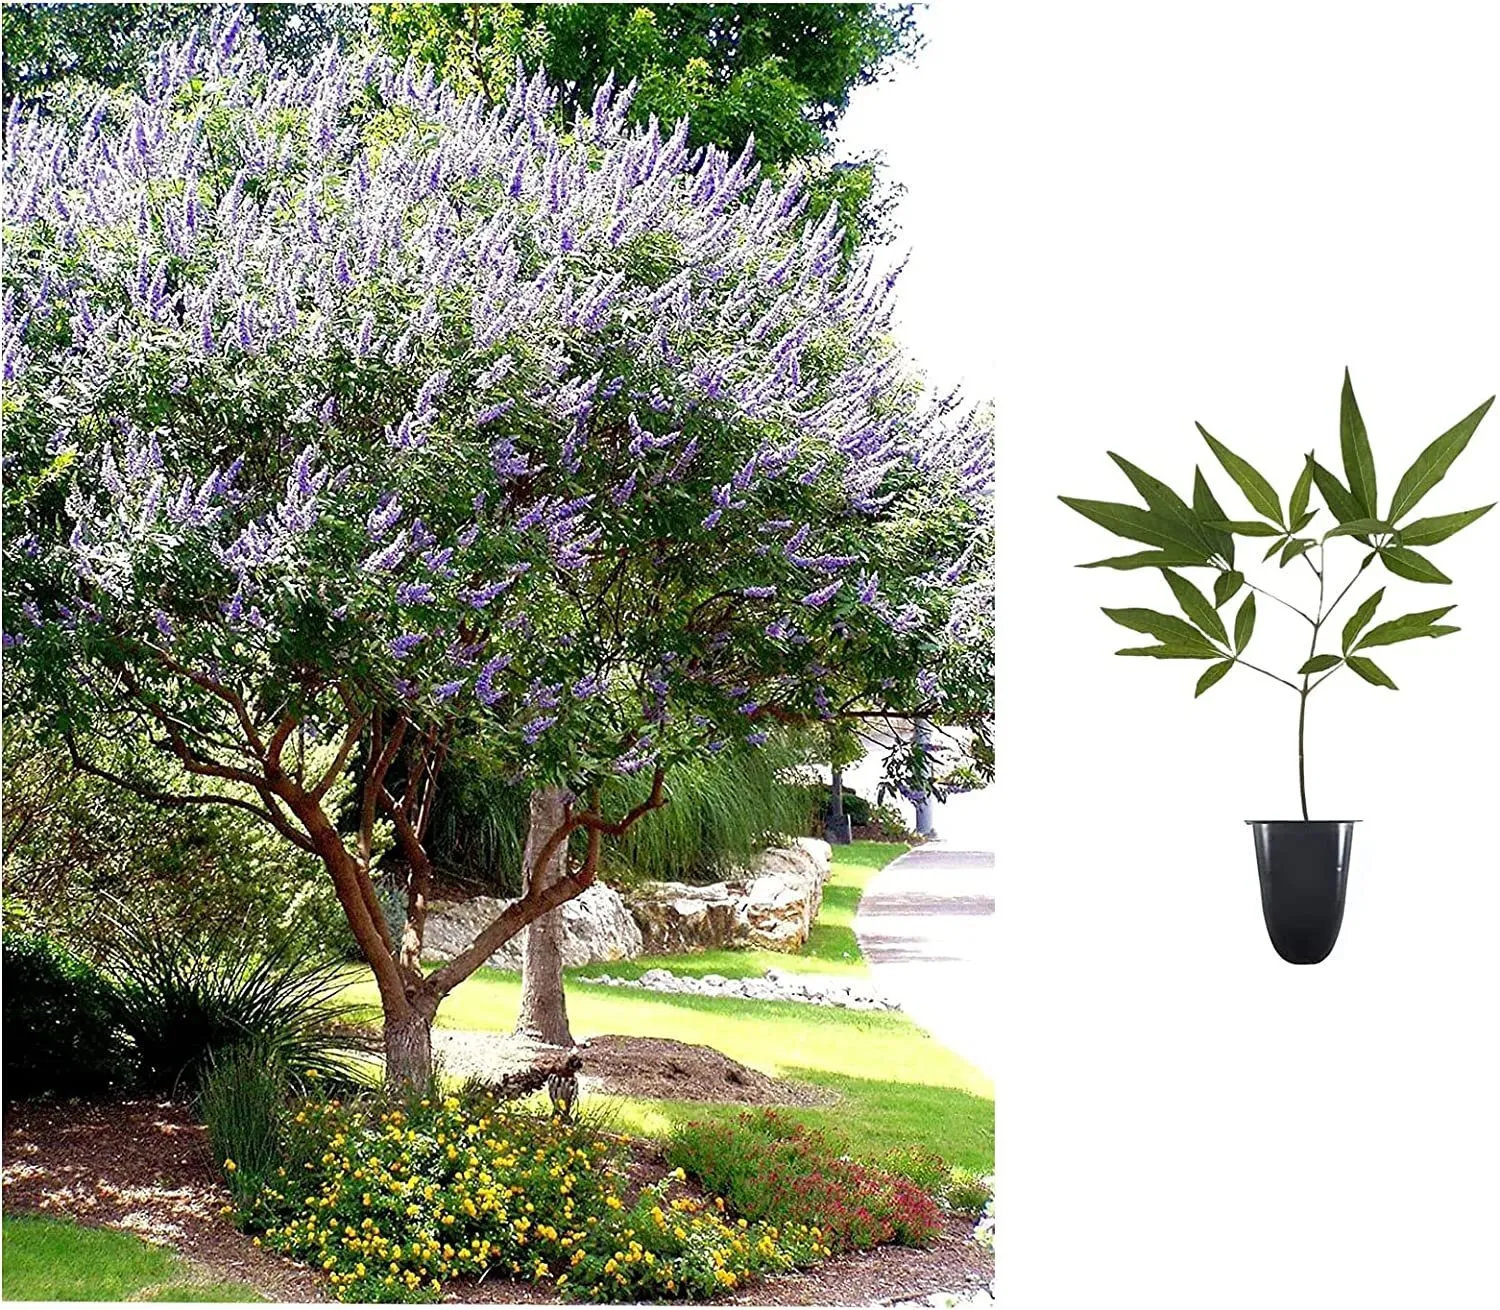 Chaste Tree Live Plants Texas Lilac Shoal Creek Vitex Agnus Castus  - $44.85